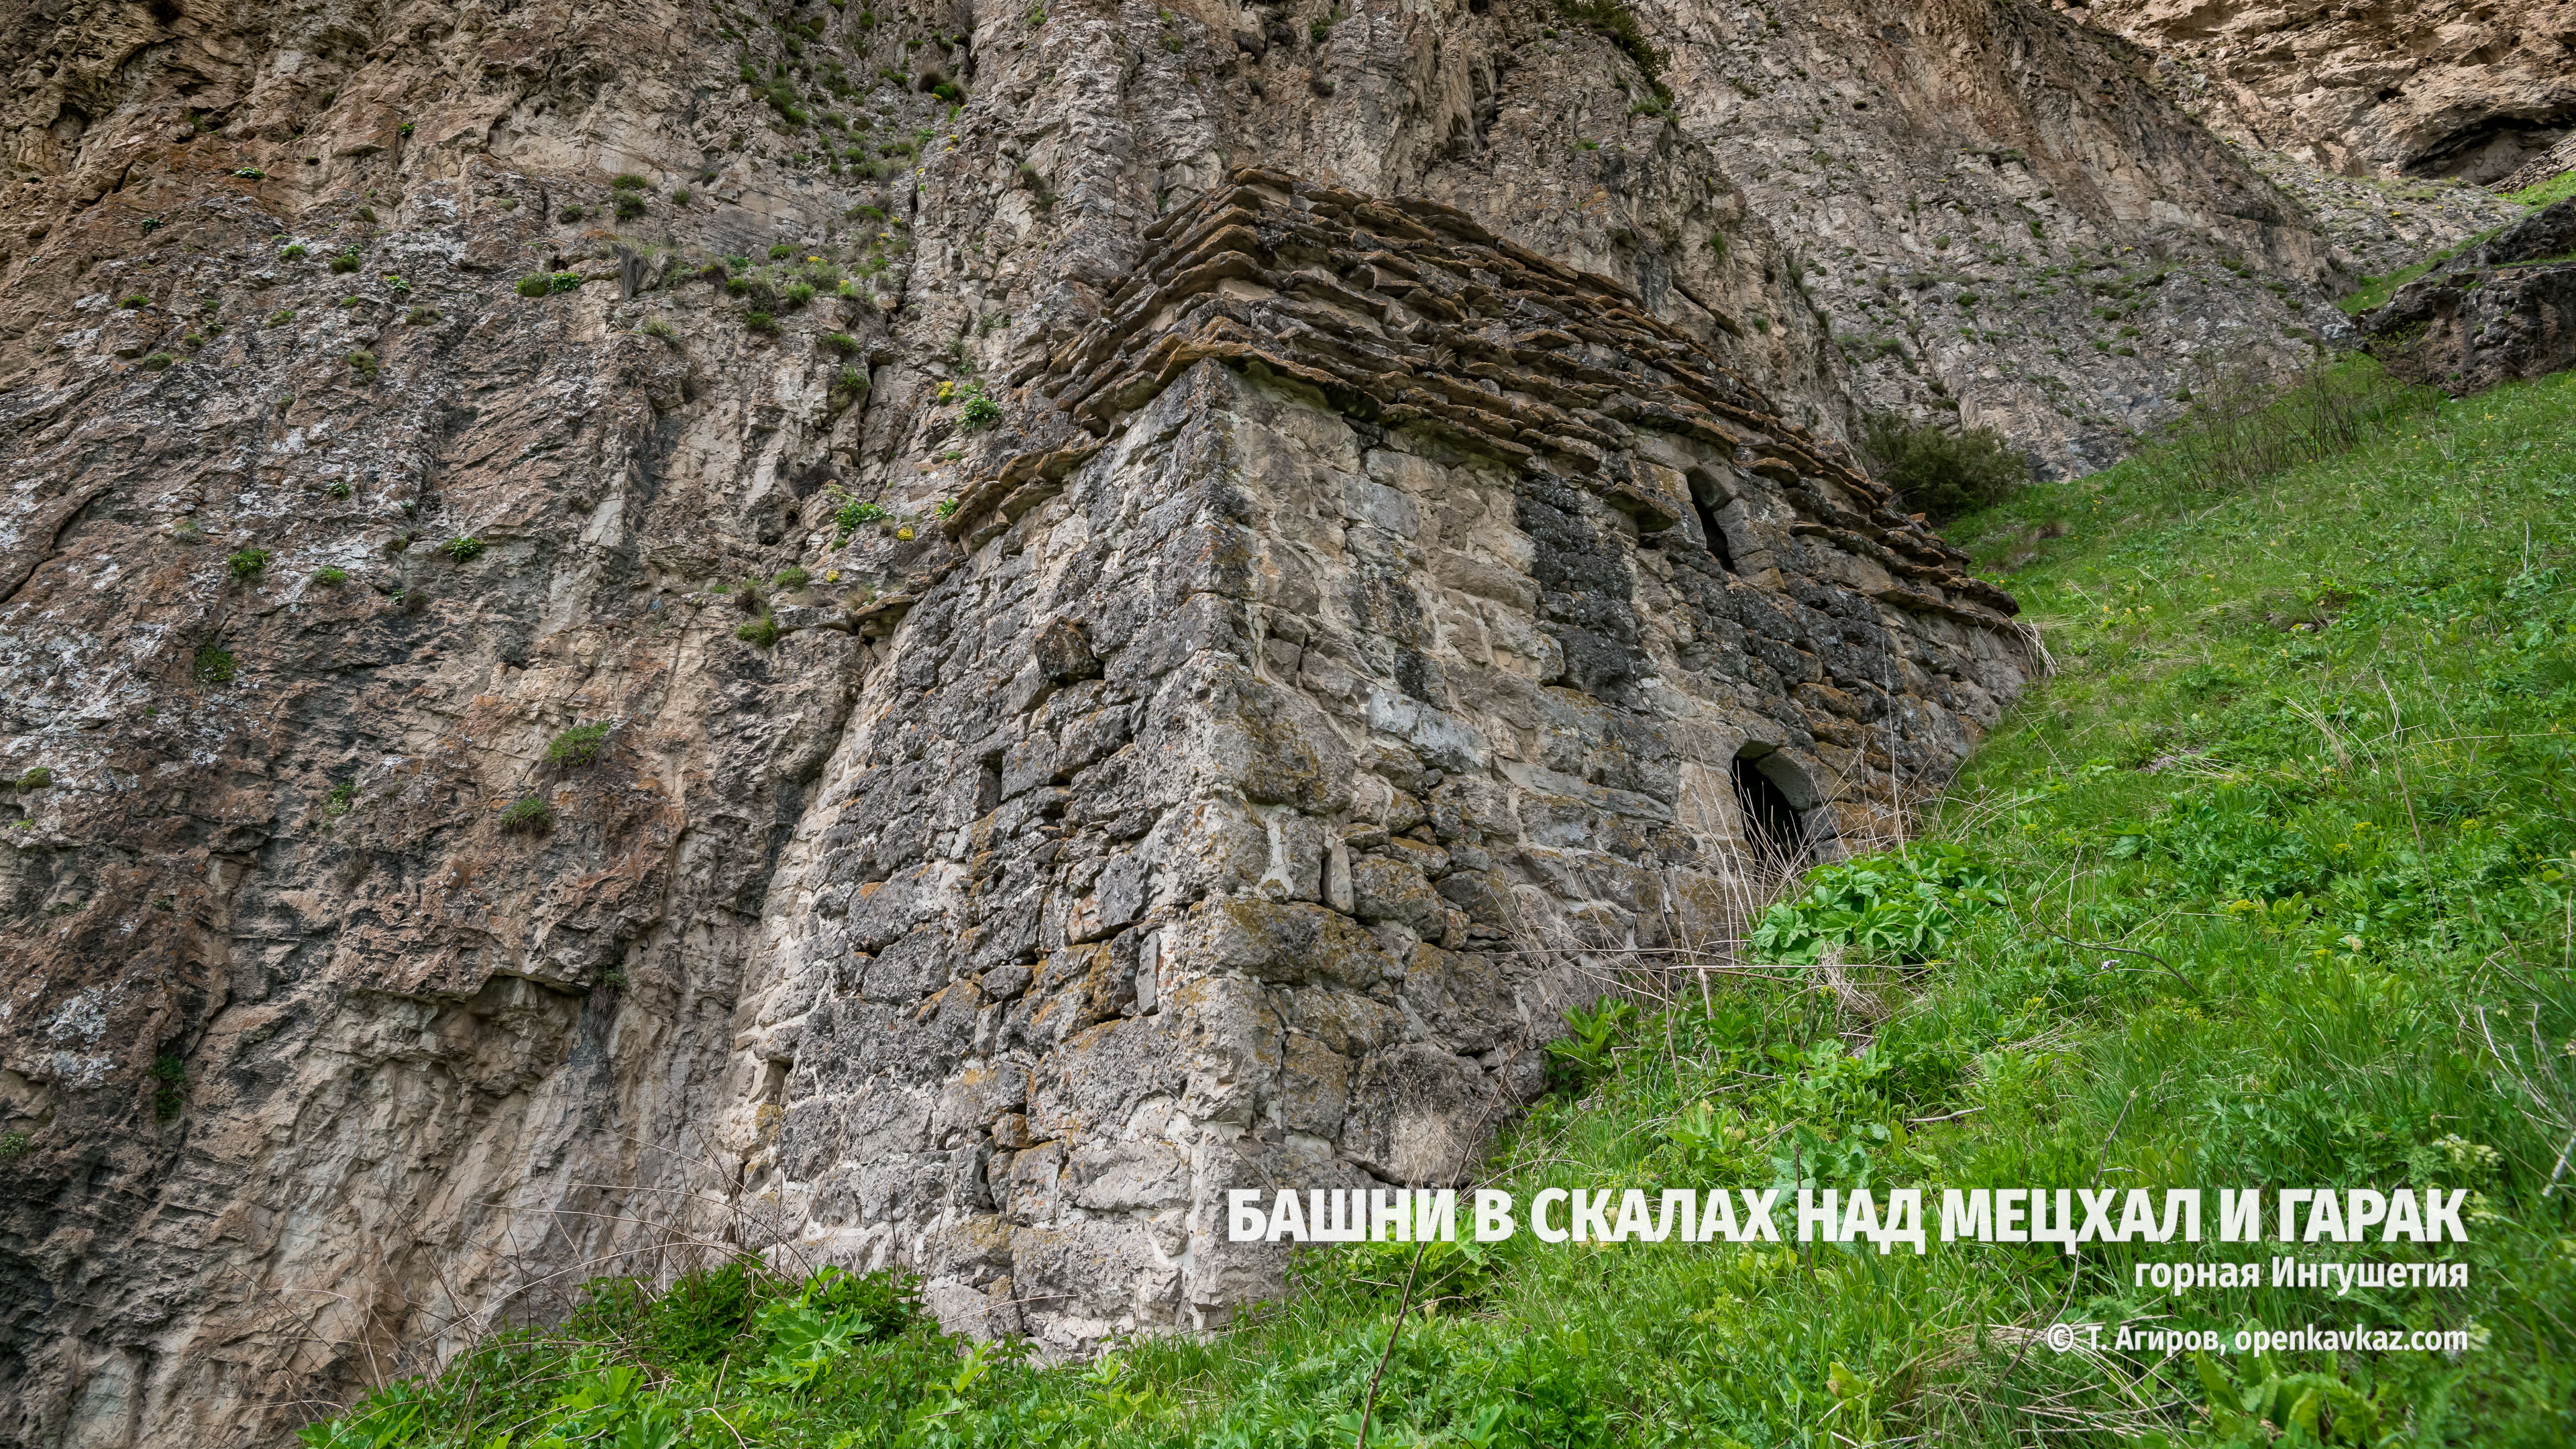 Скальная башня-убежище № 1 над Мецхал и Гарак, Ингушетия